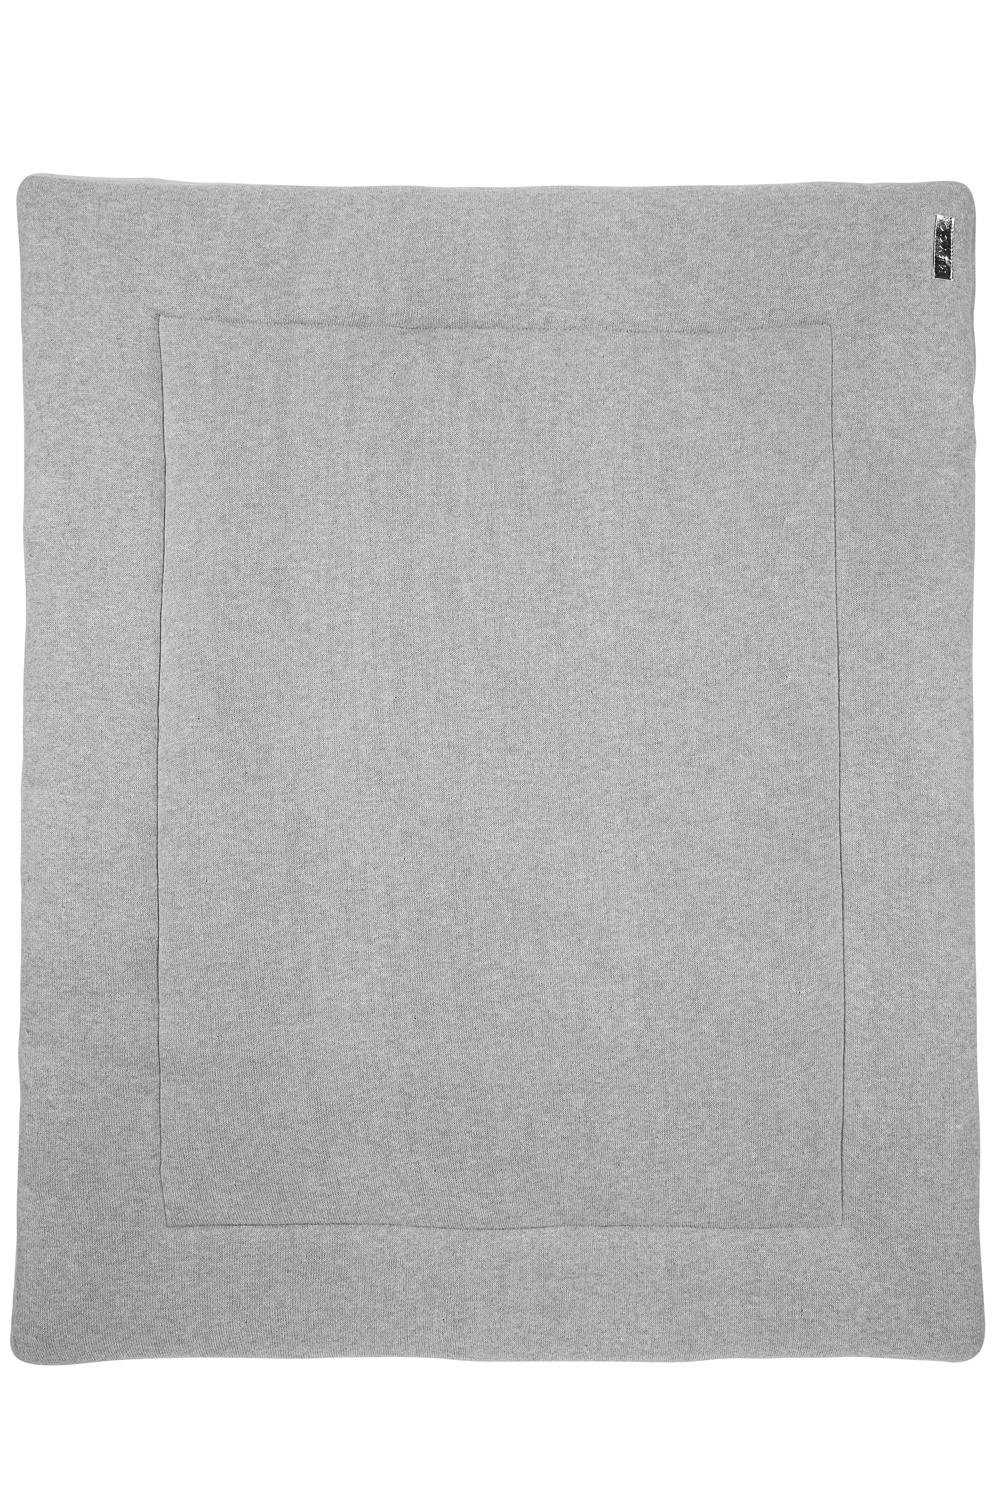 Boxkleed Knit Basic velvet - grey melange - 77x97cm